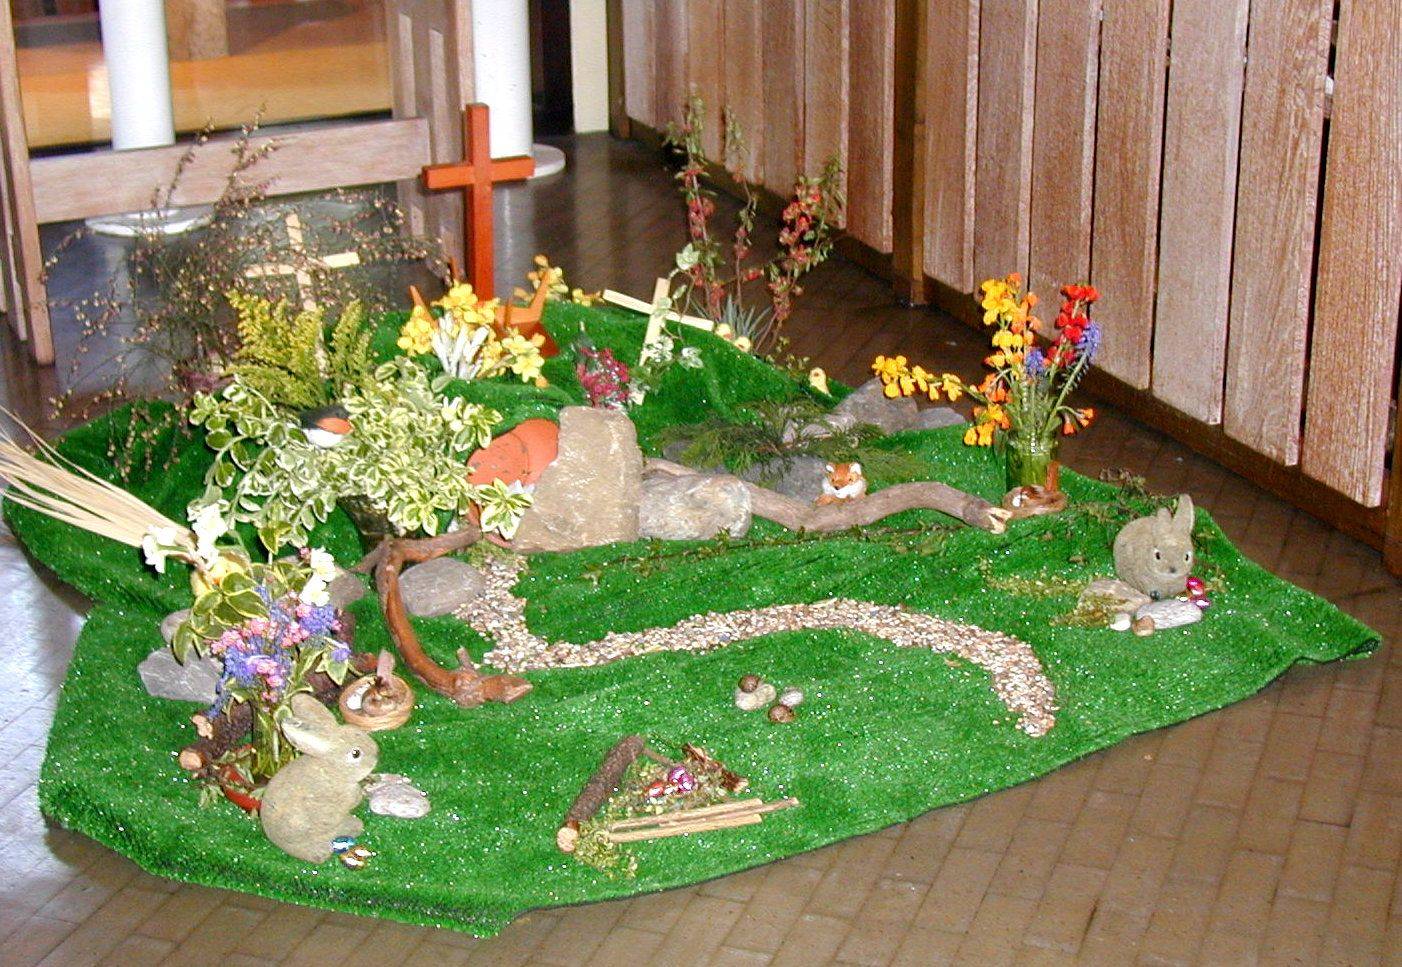 Adorable Easter Garden Decorating Ideas